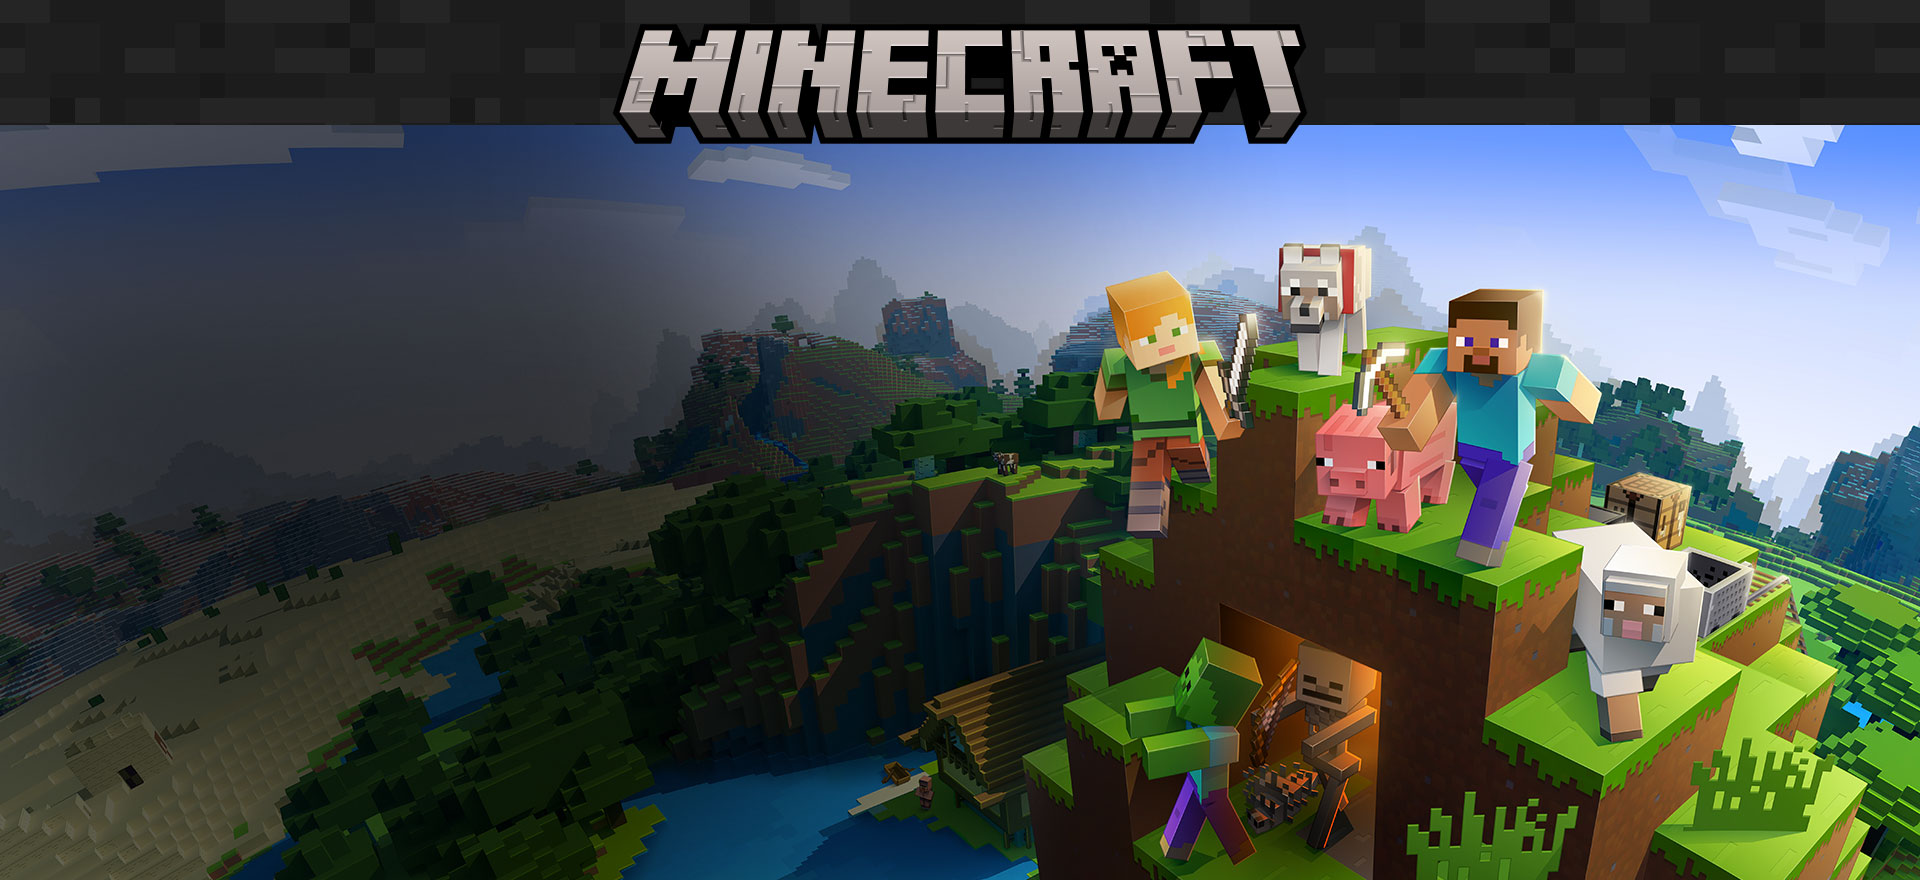 Küplerden oluşan çevre arka planında duran oyun içi karakterlerin bulunduğu Minecraft logosu